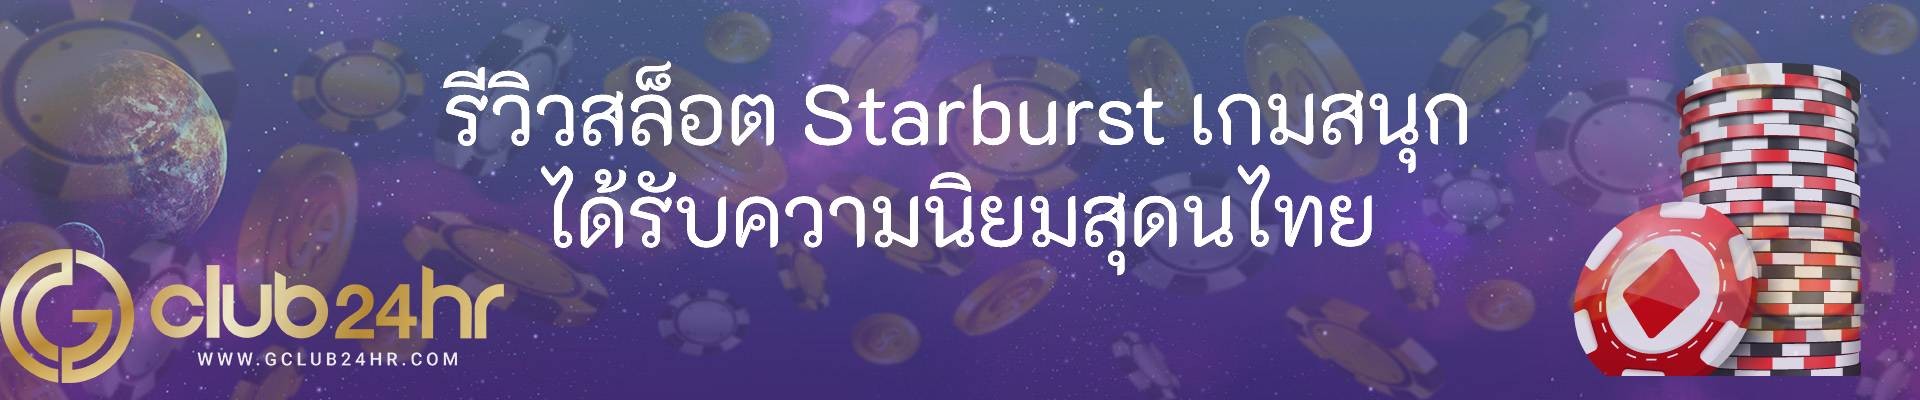 รีวิวสล็อต Starburst เกมสนุก ได้รับความนิยมสุดนไทย